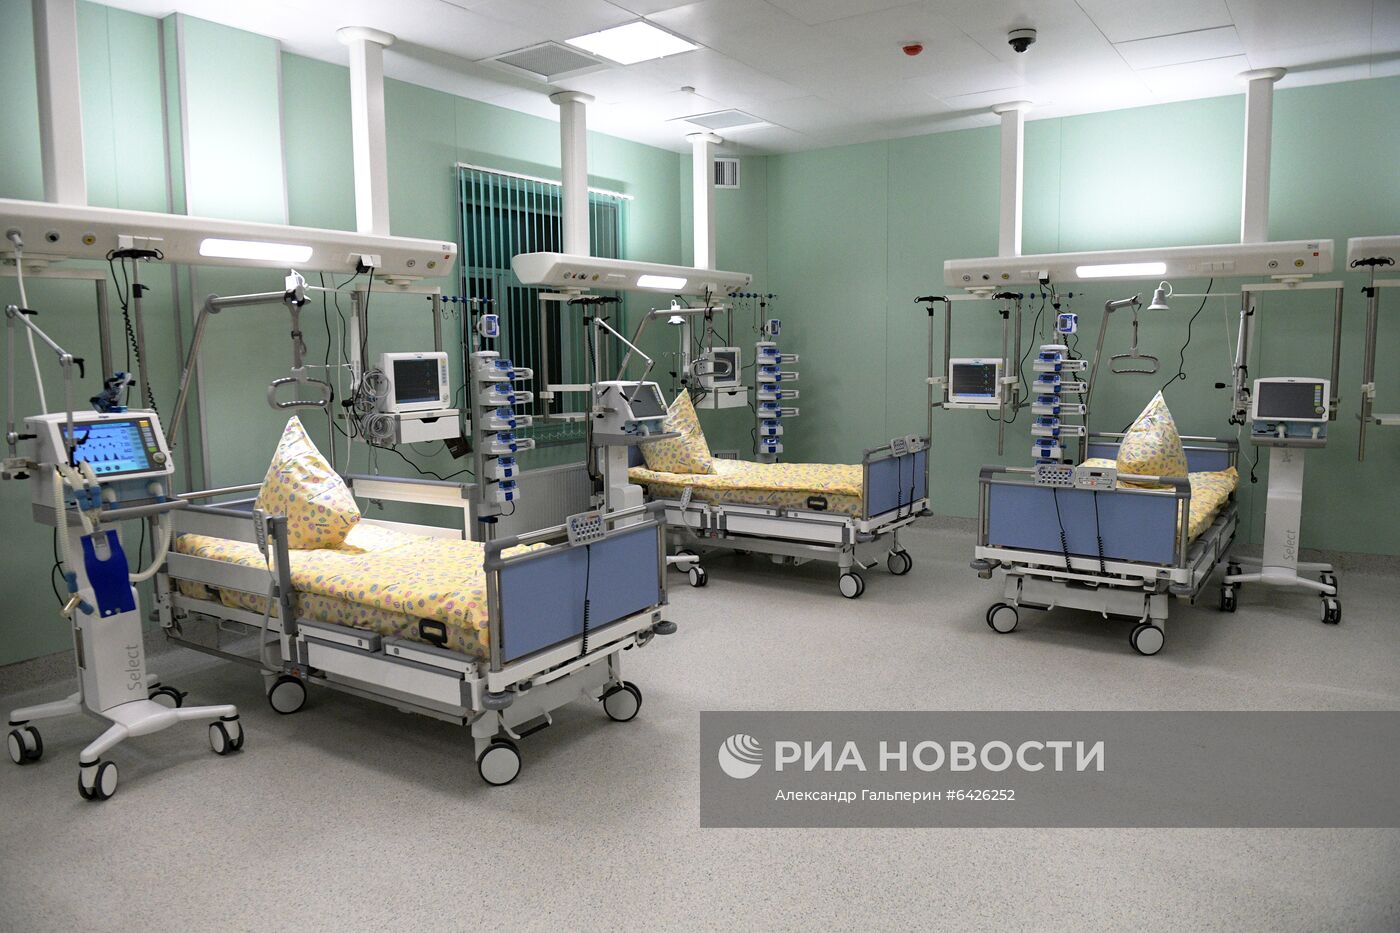 Первый стационар-трансформер для пациентов с коронавирусом в Санкт-Петербурге